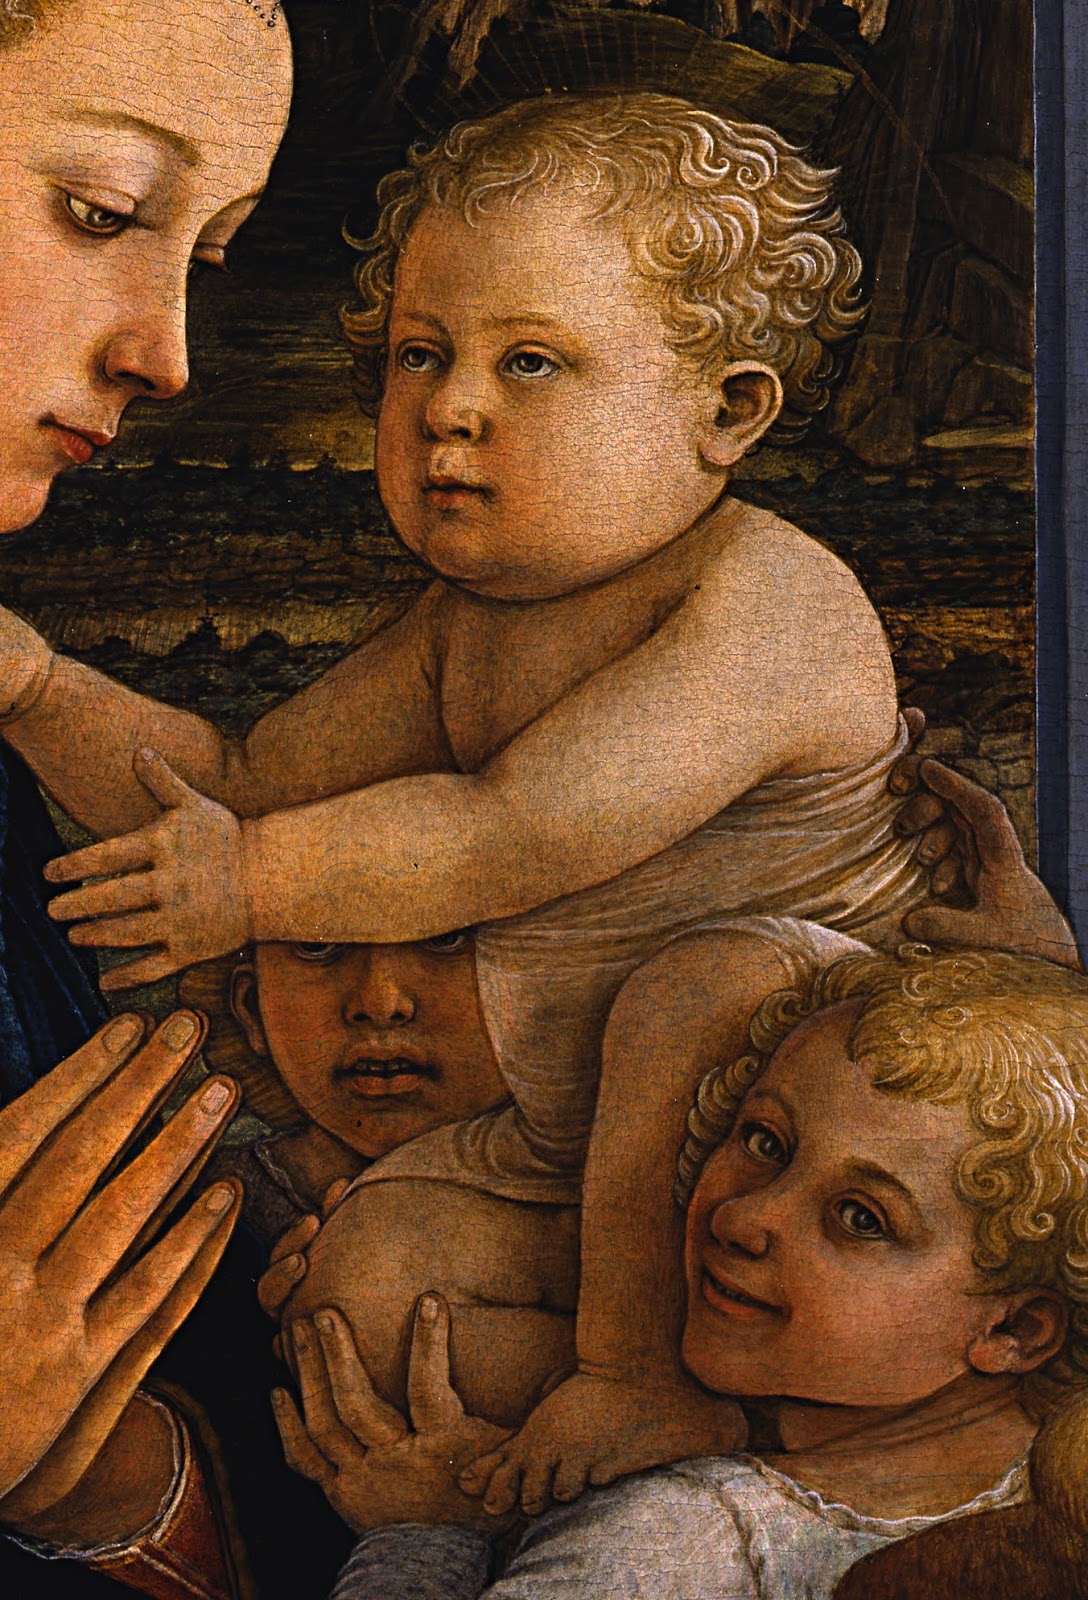 Filippino+Lippi-1457-1504 (132).jpg